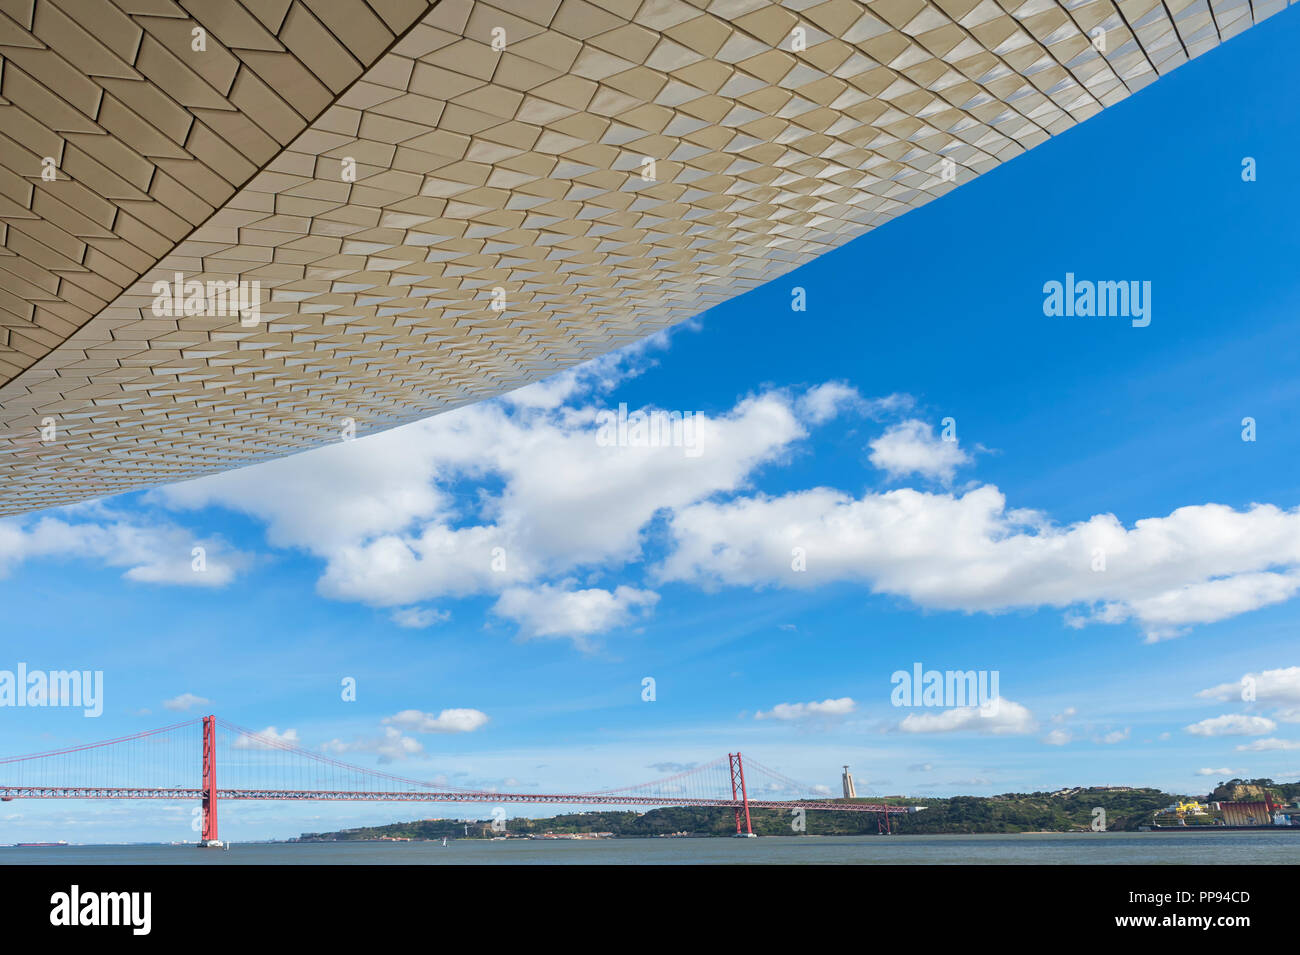 25 aprile Bridge, ex Salazar, il ponte sul fiume Tagus visto dal MAAT - Museo di Arte, Architettura e Tecnologia, Lisbona, Portogallo Foto Stock